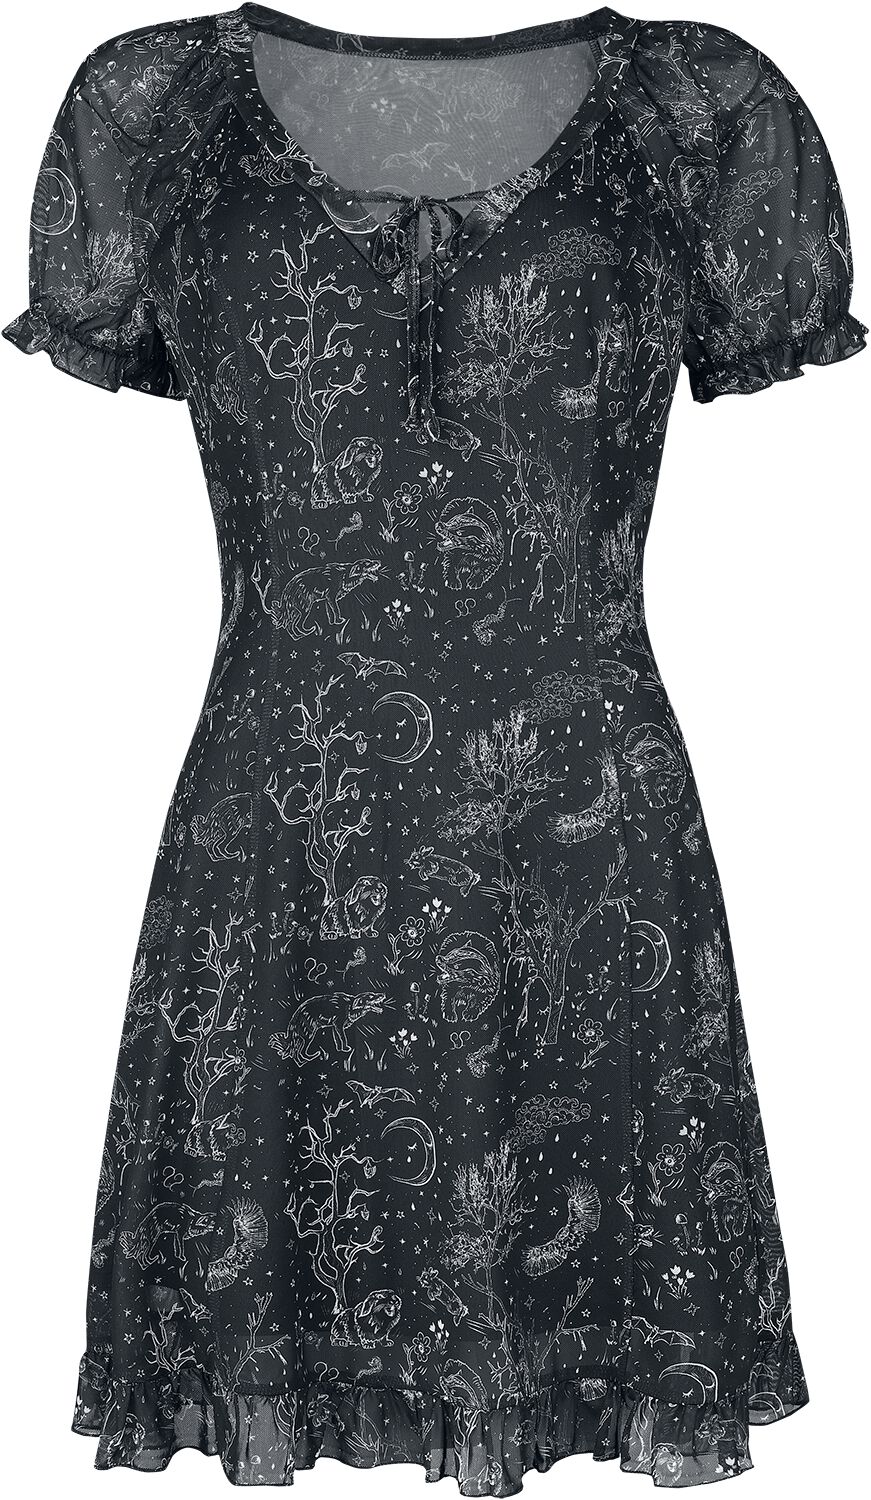 Jawbreaker - Gothic Kurzes Kleid - Night Forest Mesh Dress - XS bis XL - für Damen - Größe L - schwarz/weiß